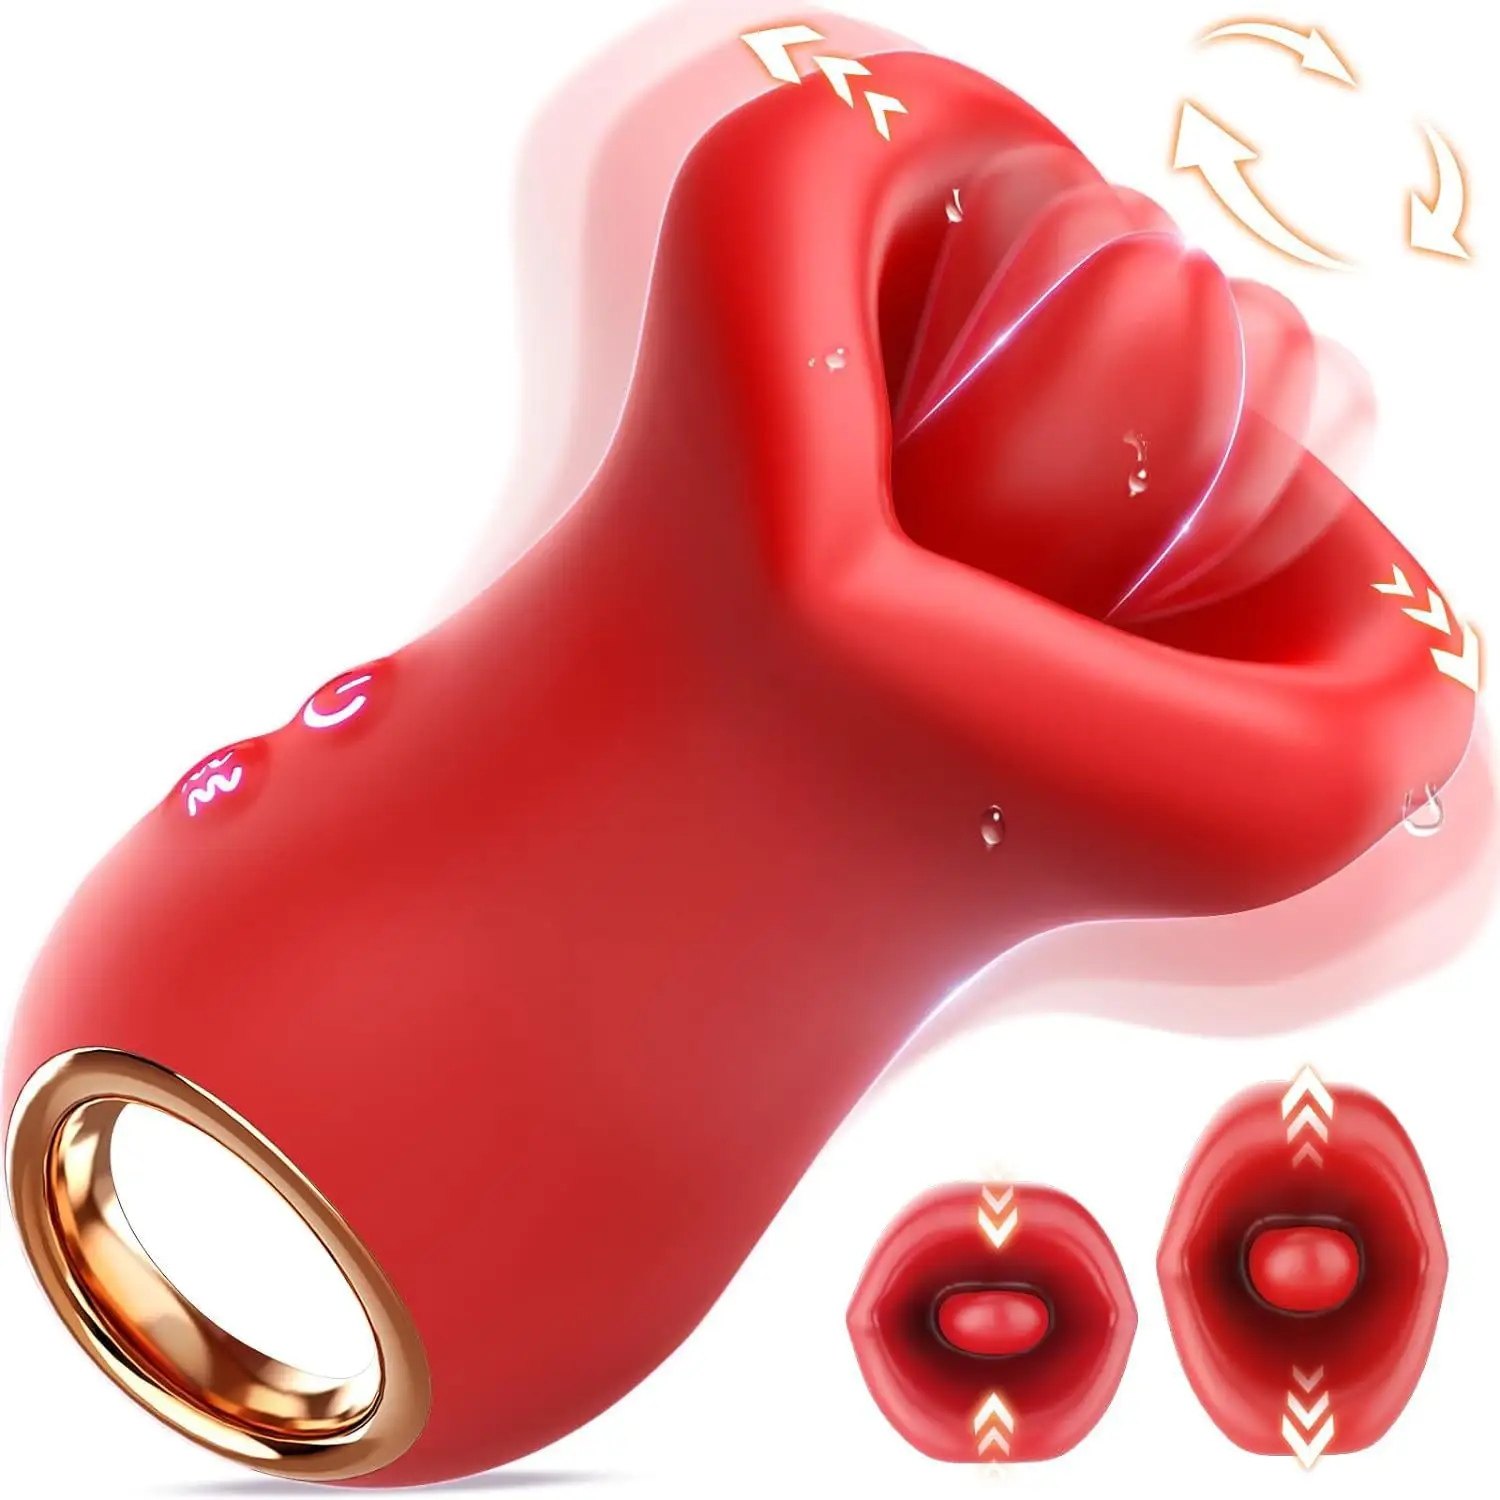 वयस्क सेक्स खिलौने वाइब्रेटर हैंडल मुंह के आकार का 10 जीभ चाटना चुंबन क्लिट निपल जी-स्पॉट वाइब्रेटर महिलाओं के लिए क्लिटोरल स्टिमुलेटर